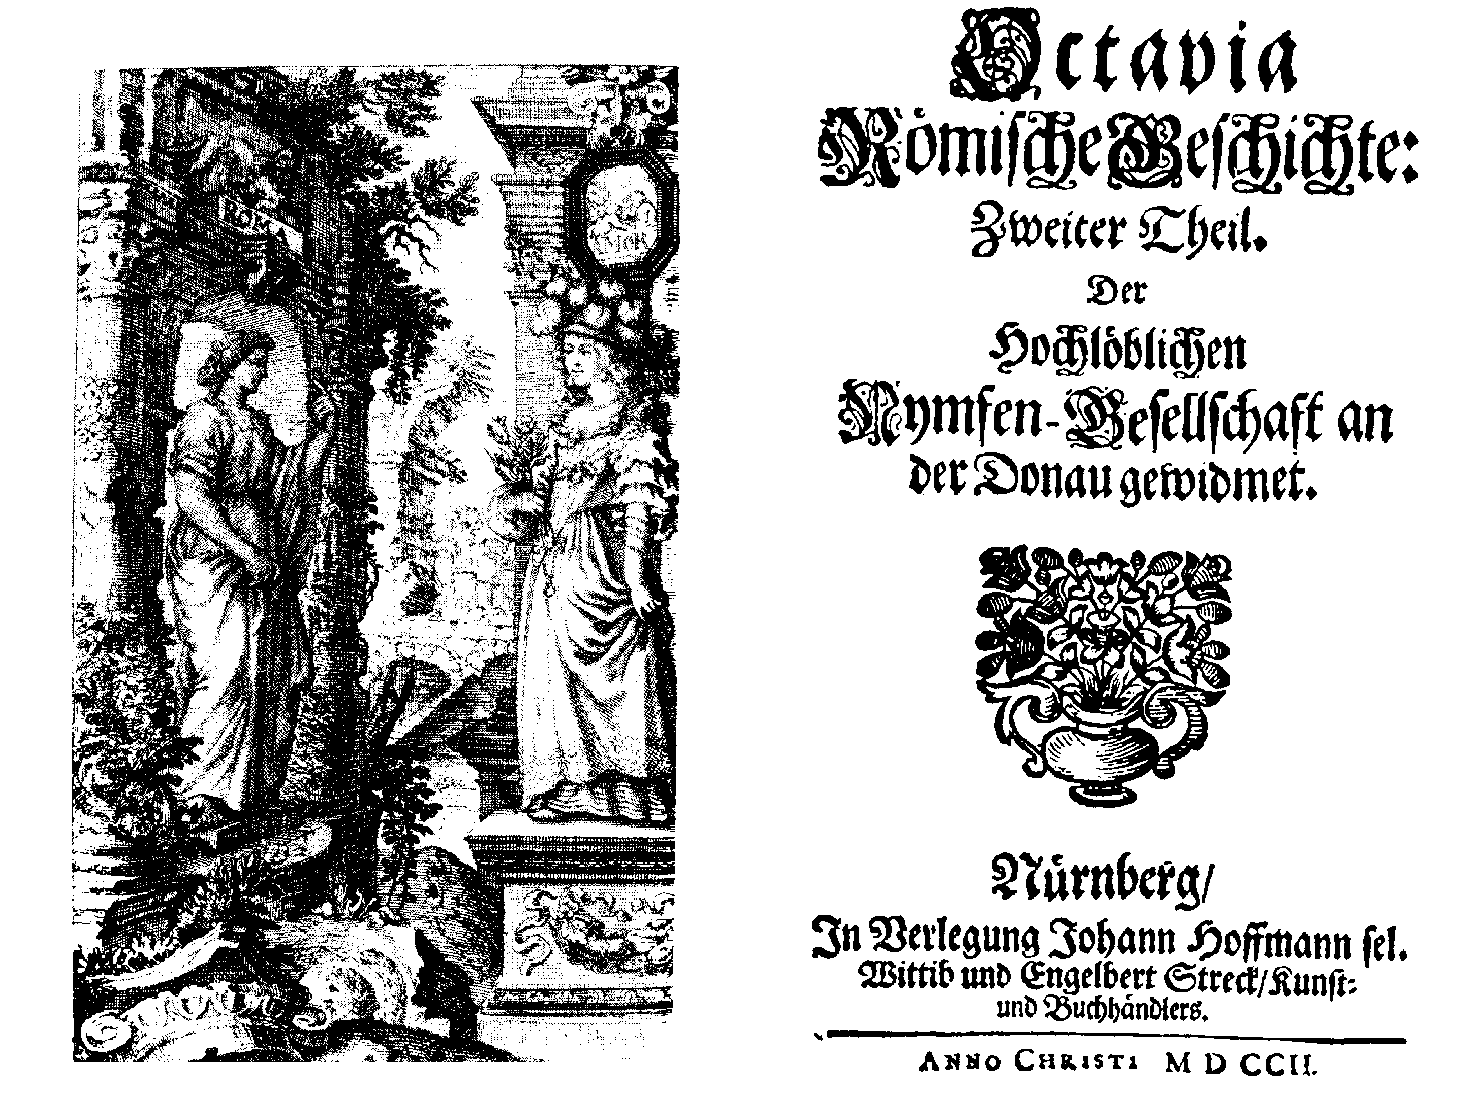 [Anton Ulrich Herzog zu Braunschweig und Lüneburg,] Octavia römische Geschichte: Zweyter Theil, [vol. 3] (Nürnberg: J. Hoffmanns Wittib/ E. Streck, 1702).